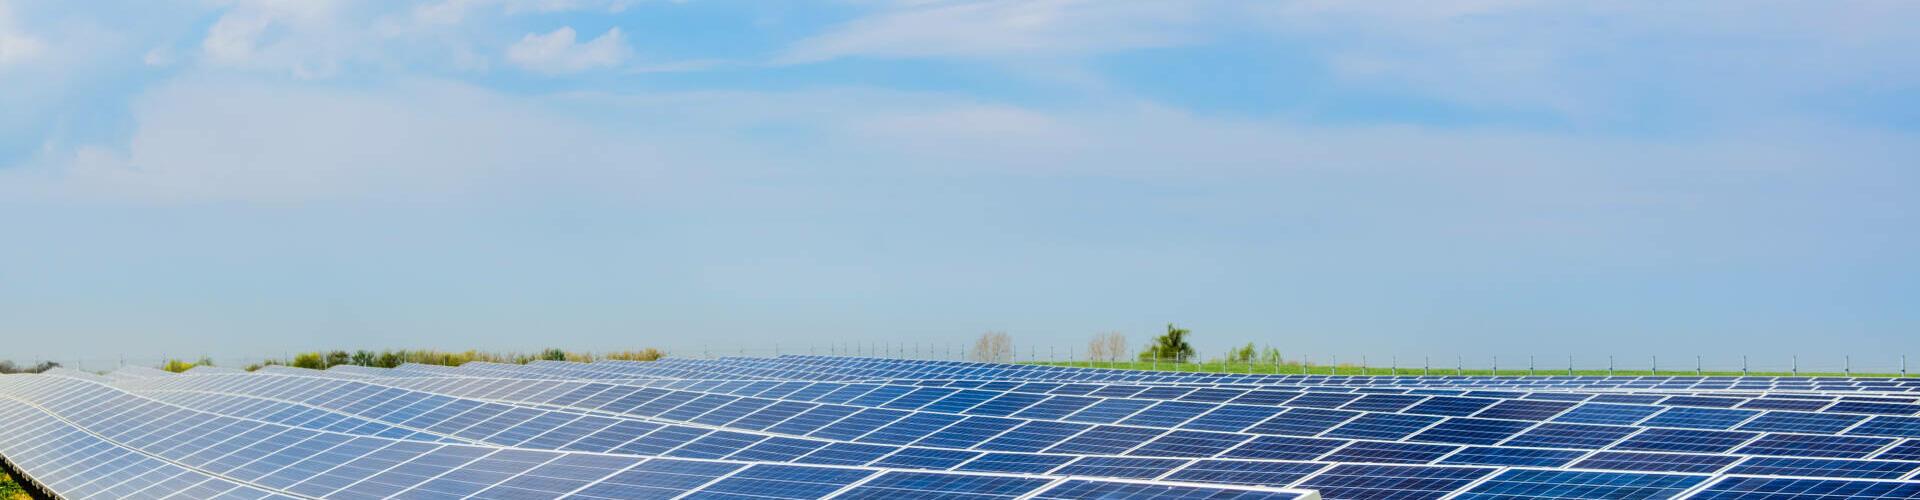 Fotovoltaik und Solarenergie in der grünen Branche